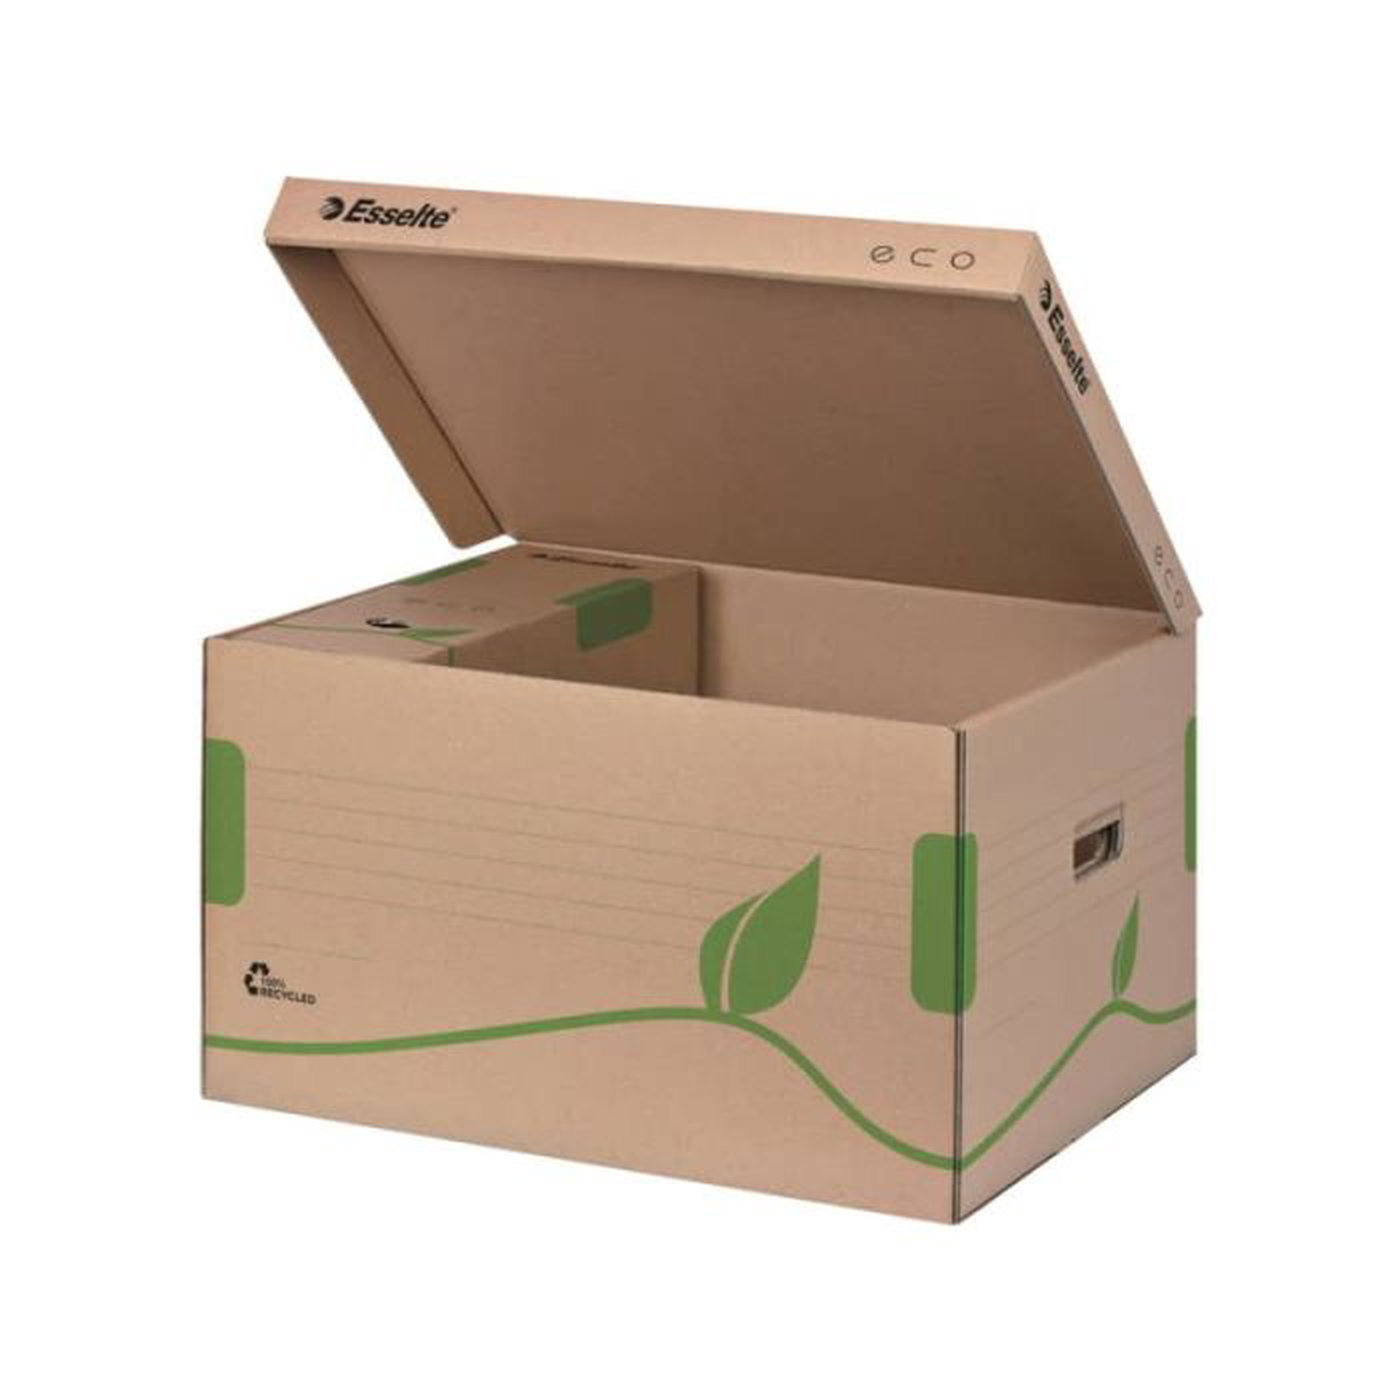 Scatola archivio Esselte ECOBOX container per Boxy 80/100 avana